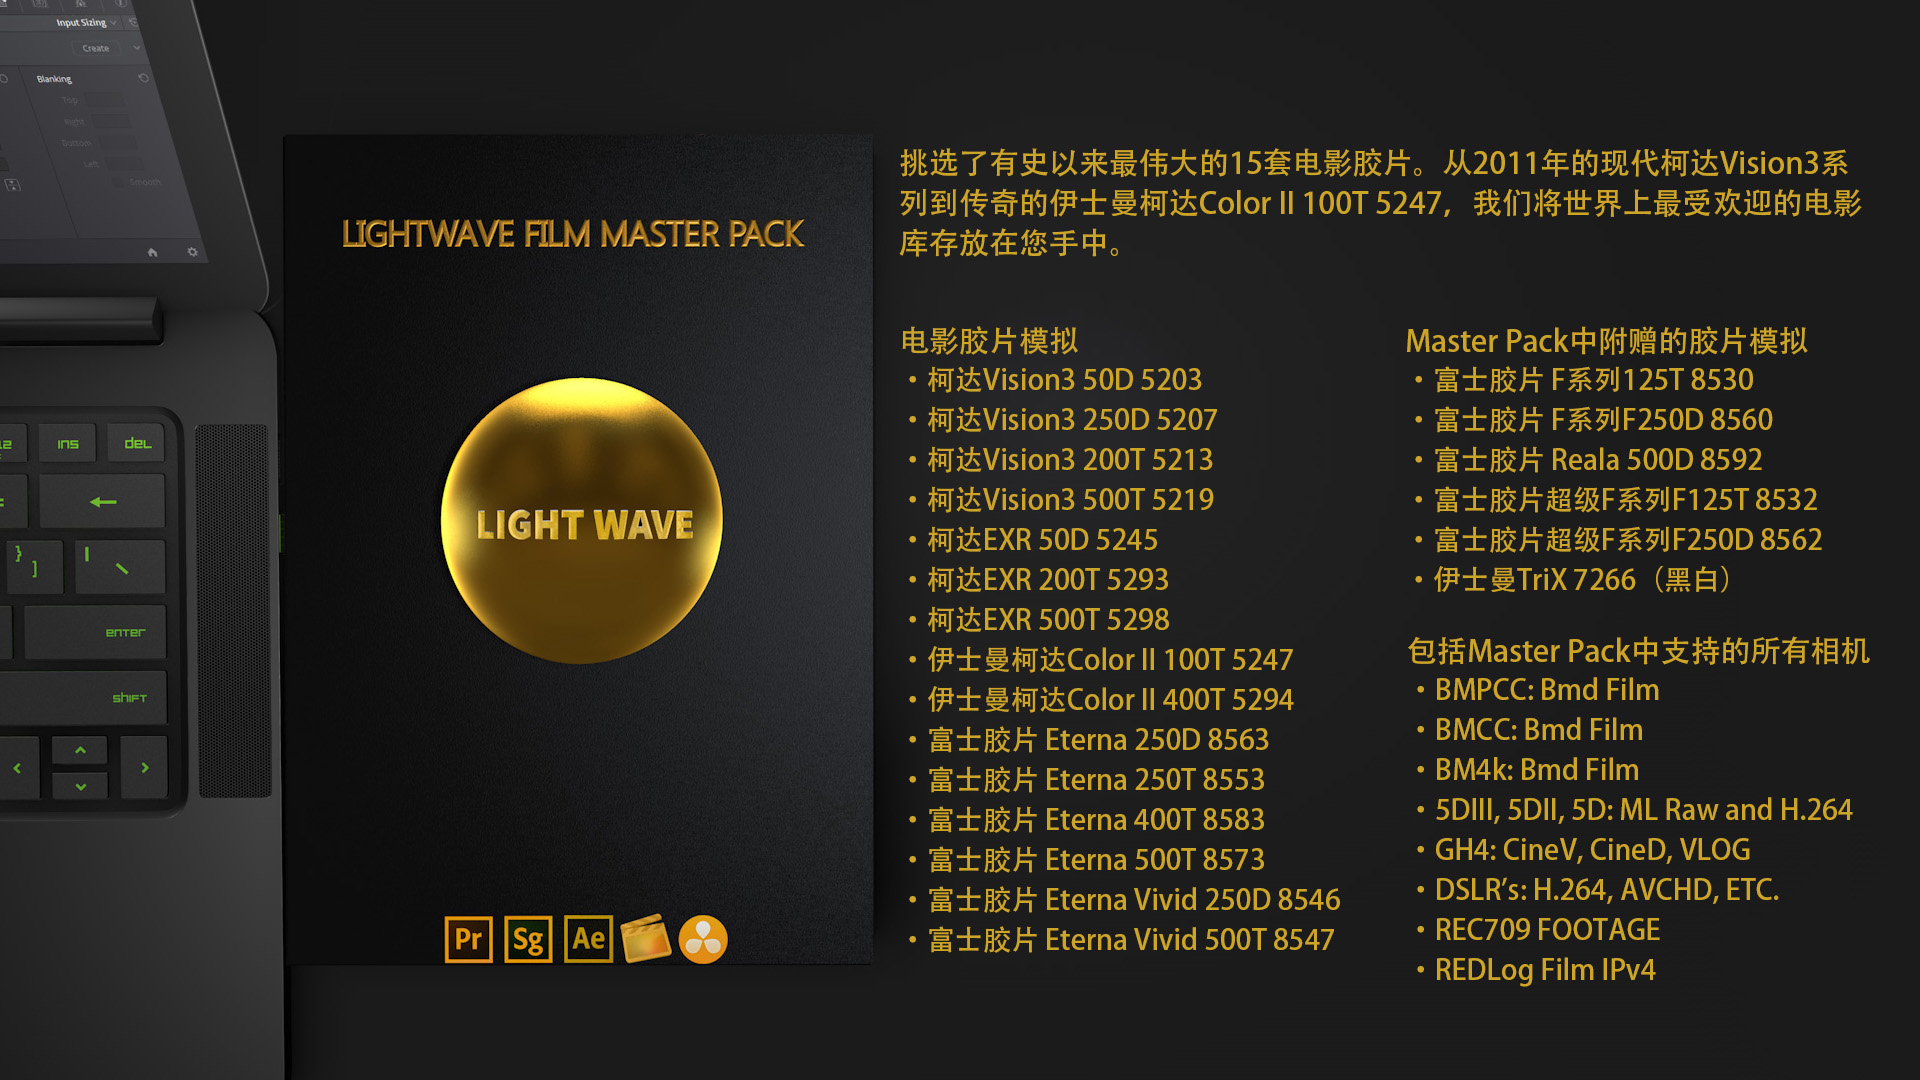 339组柯达/富士仿真电影胶片色彩科学升级视频调色LUT预设包 LightWave Film LUT Master Pack 3.0 插件预设 第3张